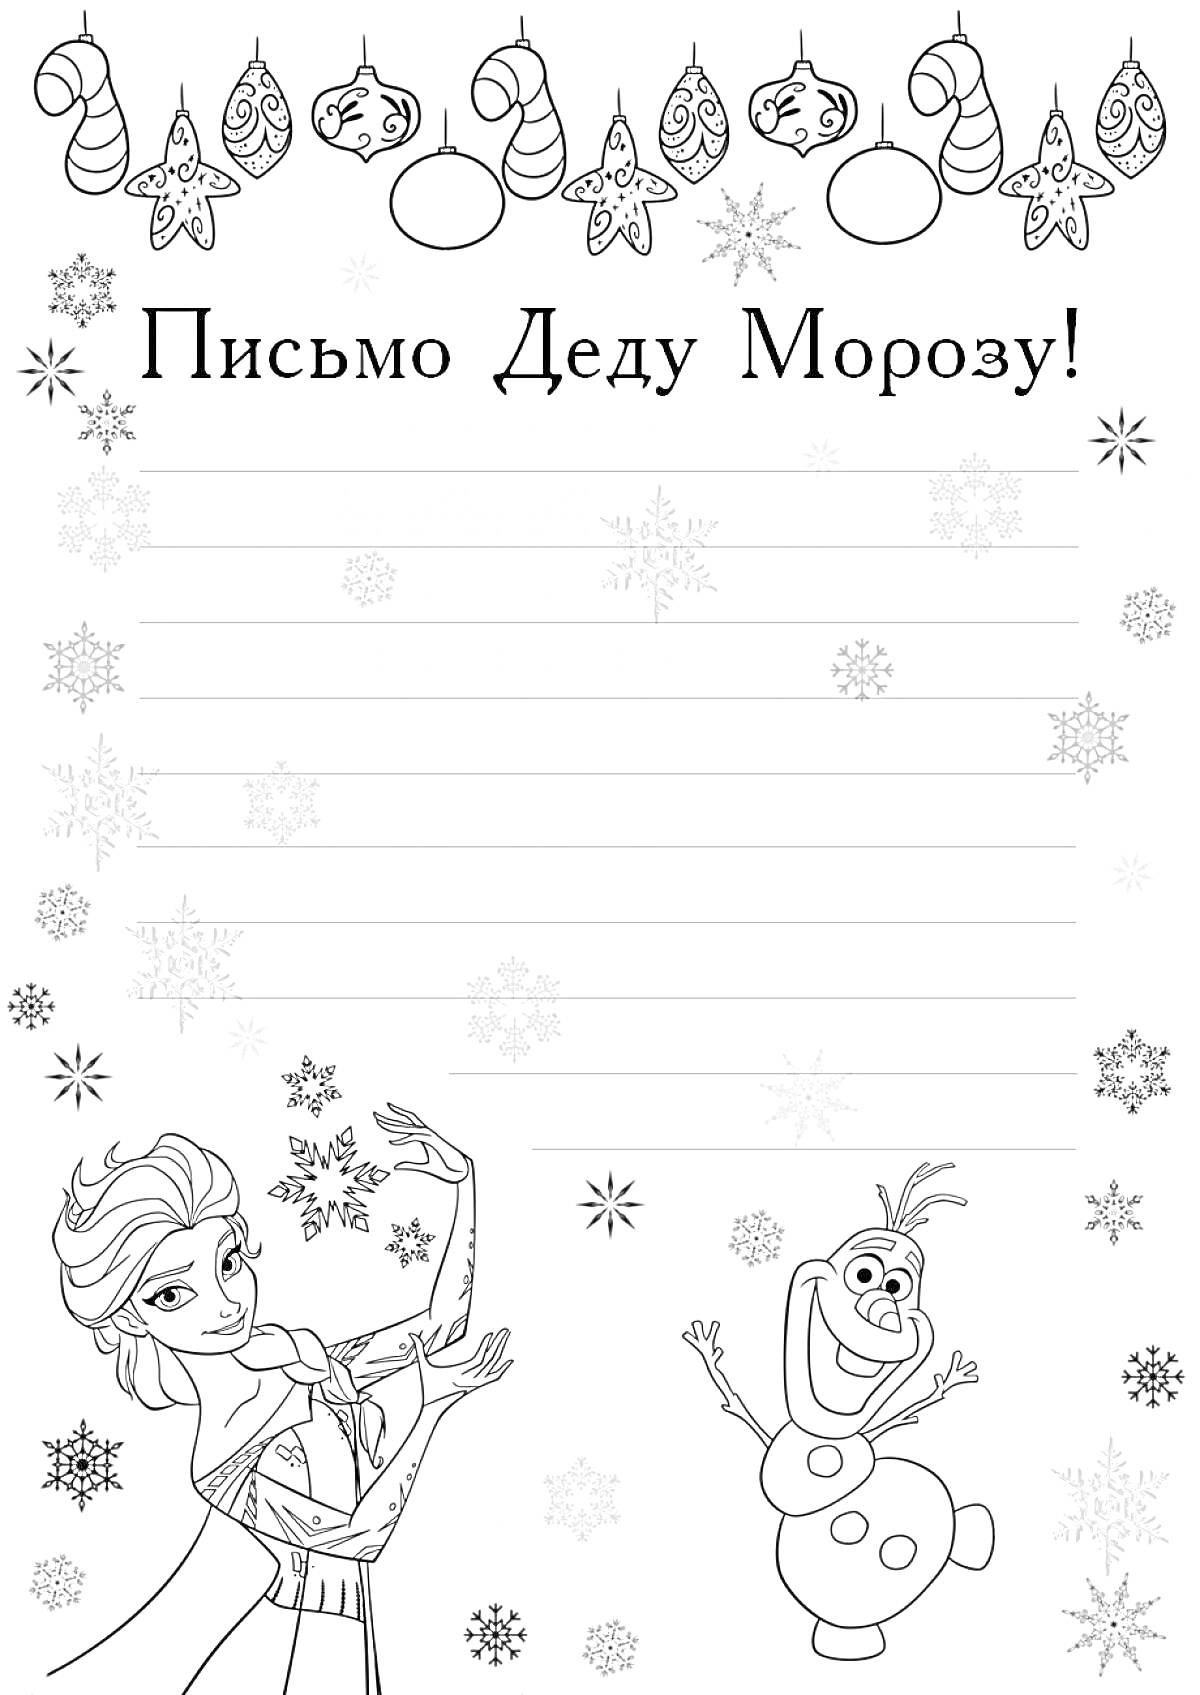 Раскраска Бланк письма Деду Морозу с персонажами из мультфильма, снежинками, новогодними украшениями и надписью 